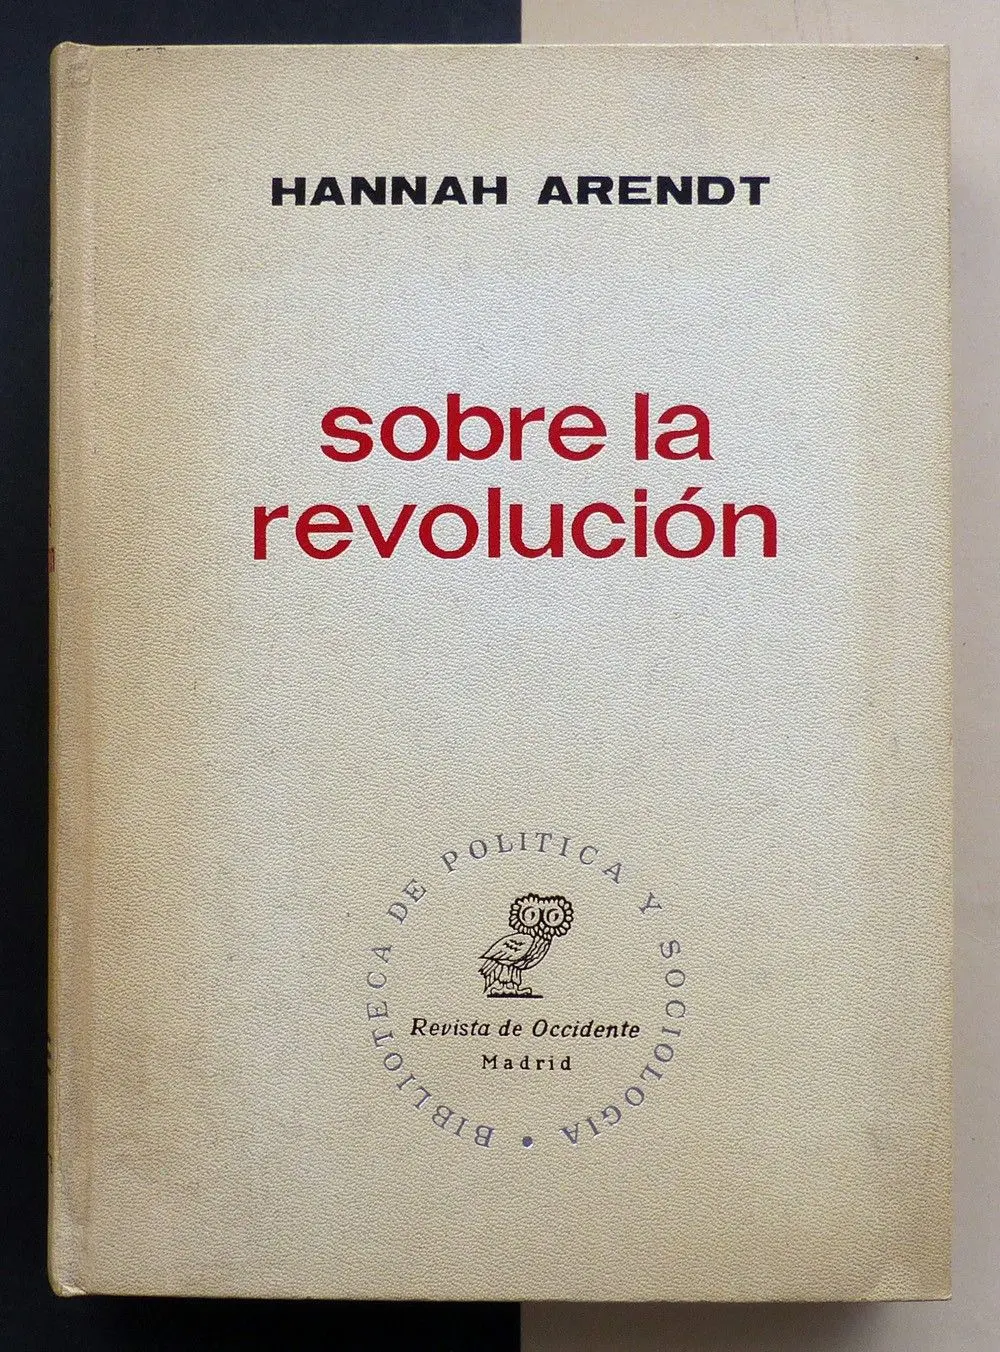 hannah arendt sobre la revolucion resumen - Qué es la revolución para Hannah Arendt